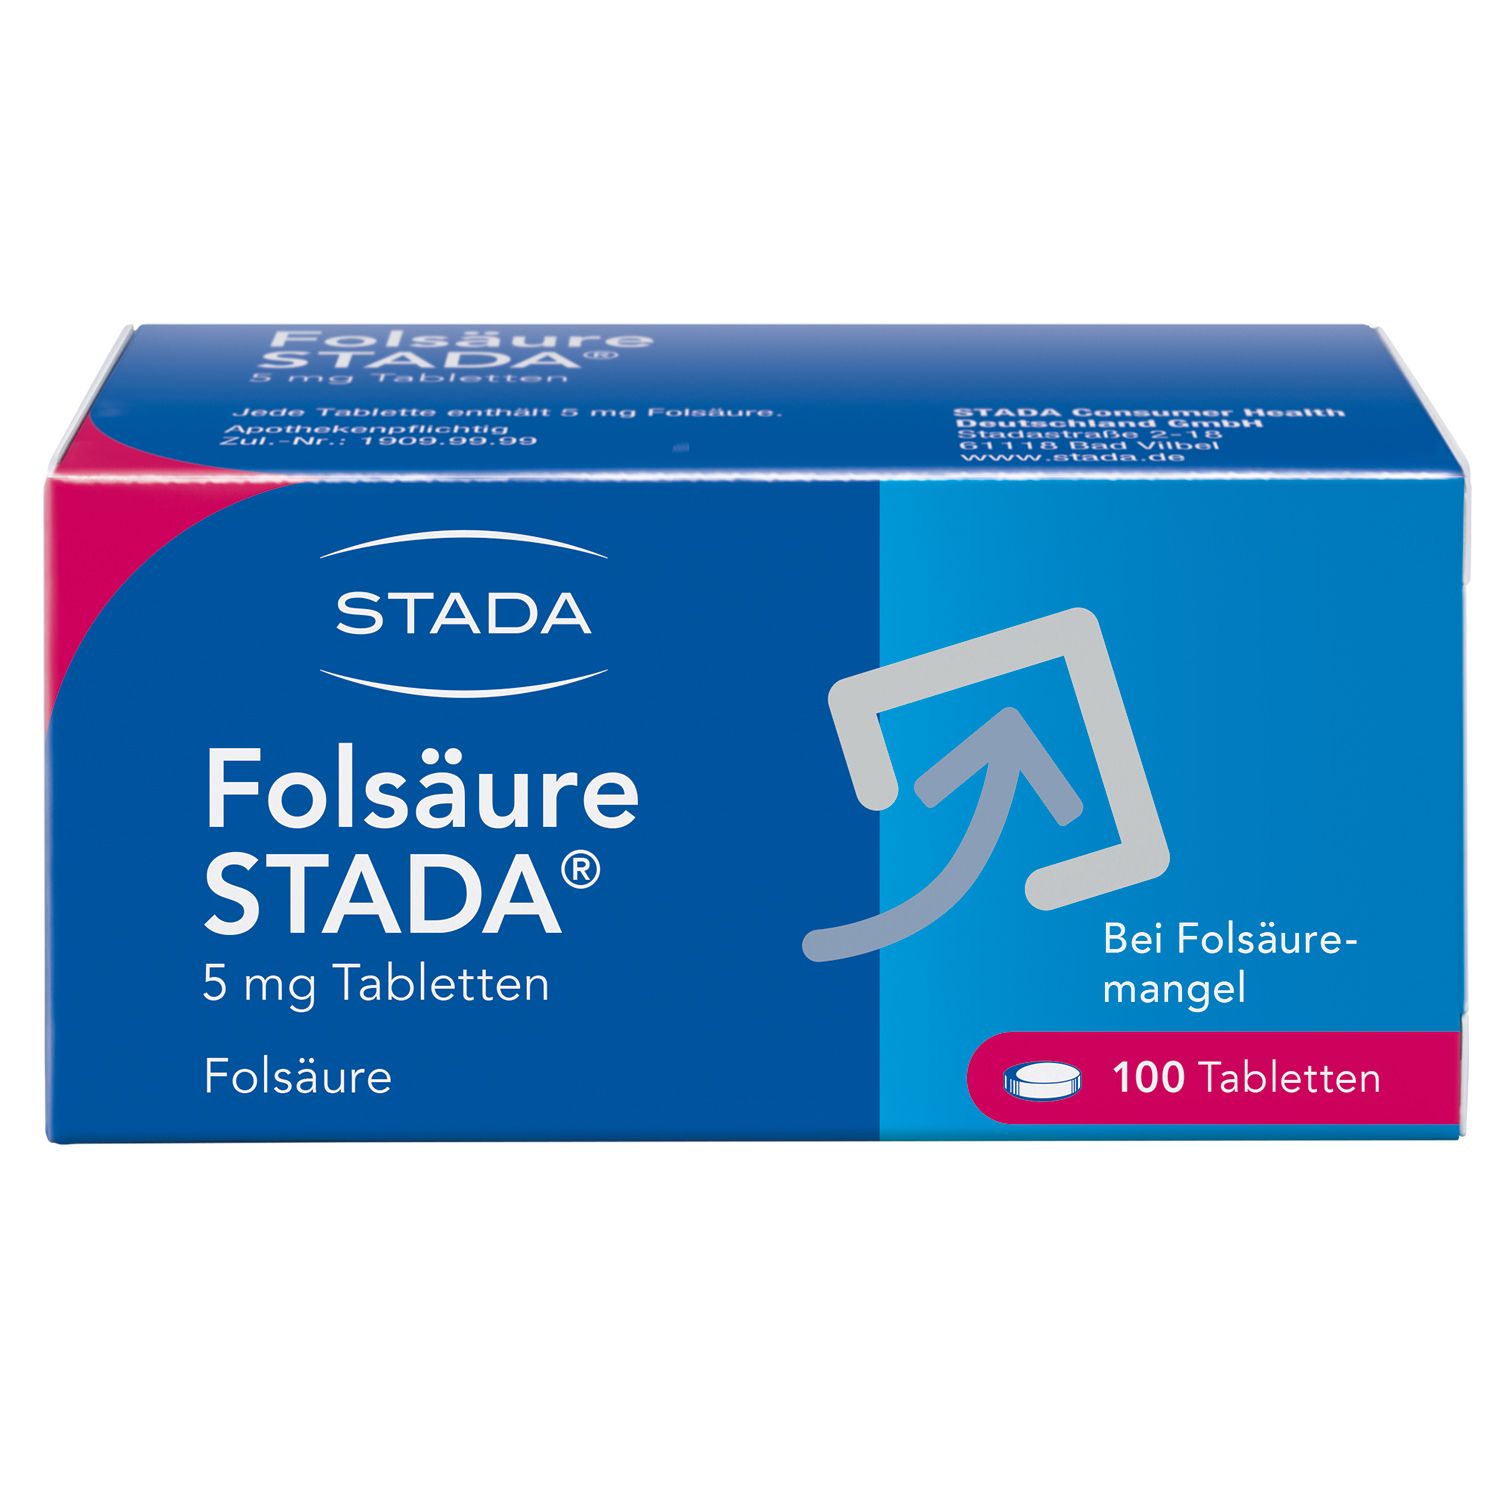 Folsäure Stada® 5 mg Tabletten, Vitaminpräparat zur Behandlung von Folsäuremangelzuständen